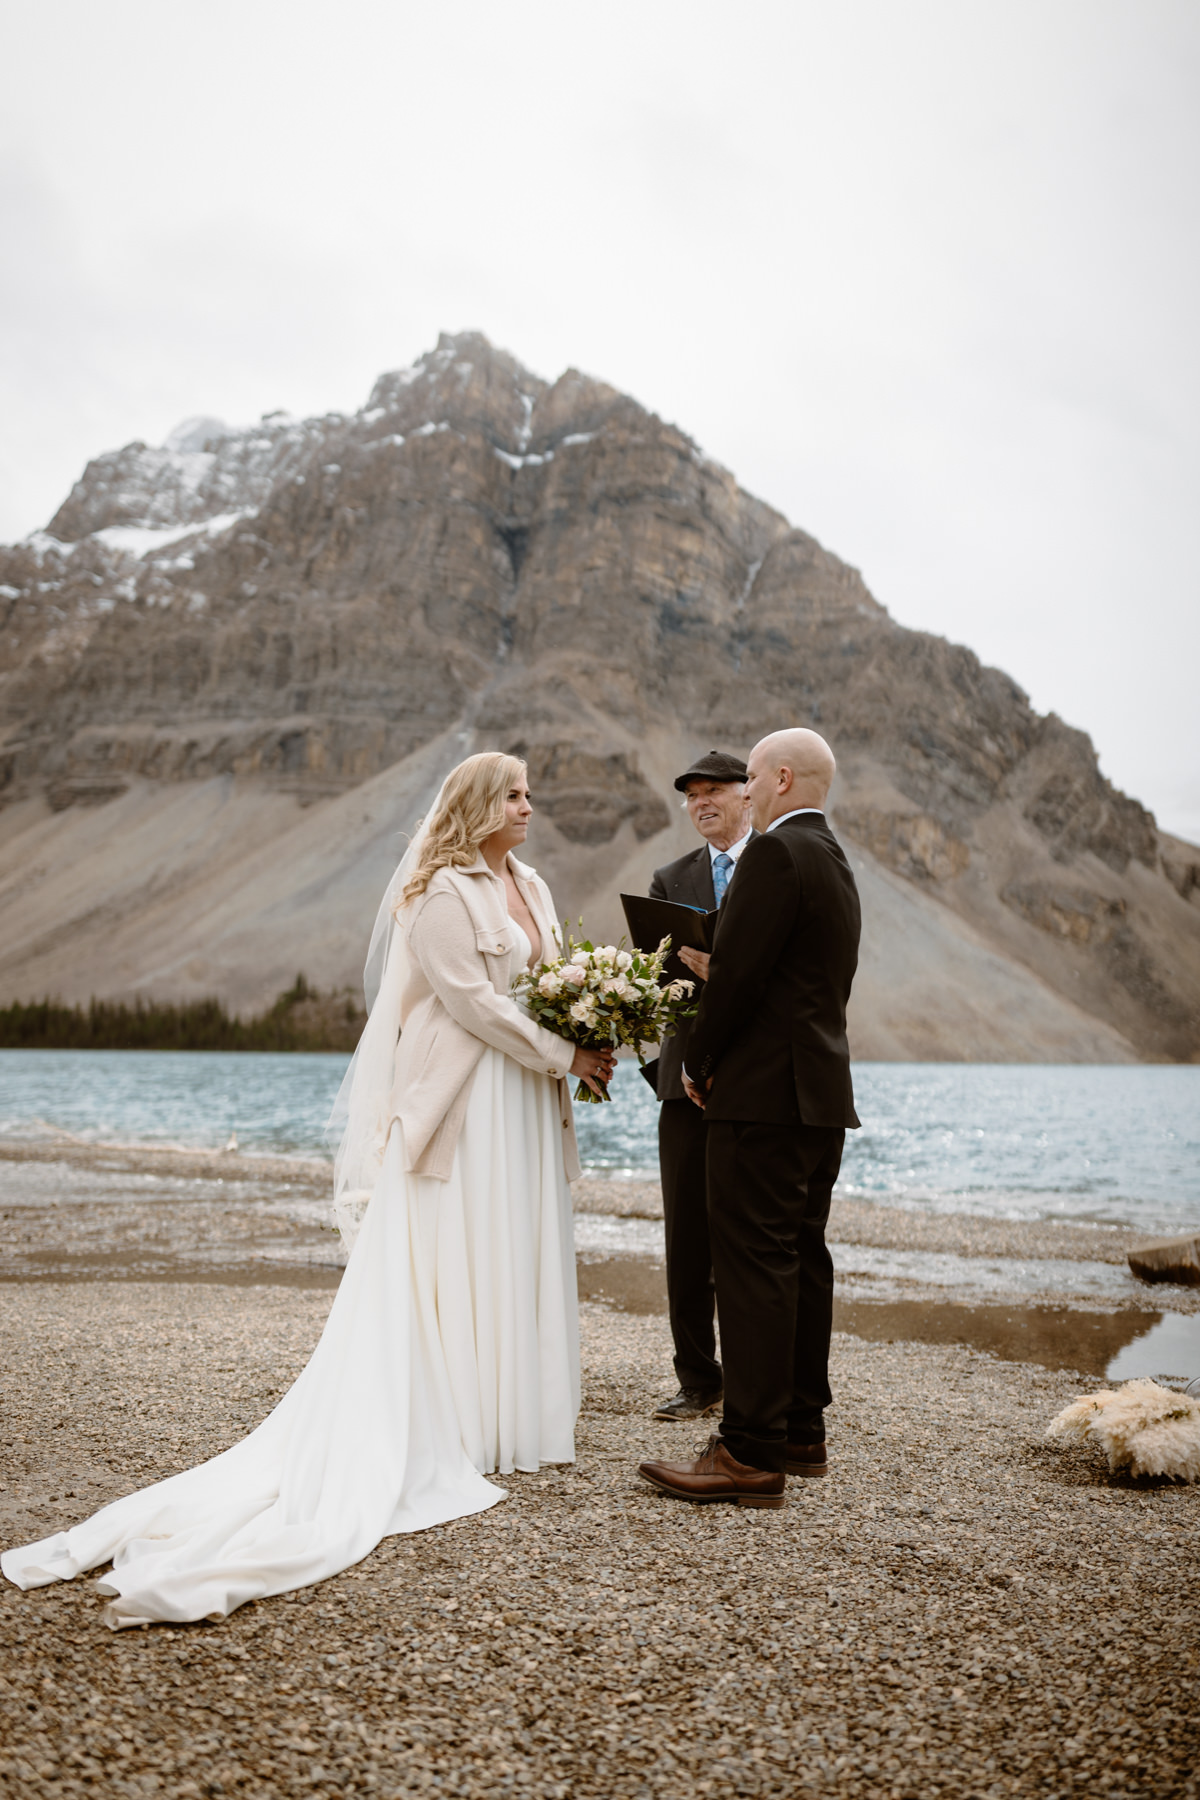 Rockies Heli Wedding - Photo 11